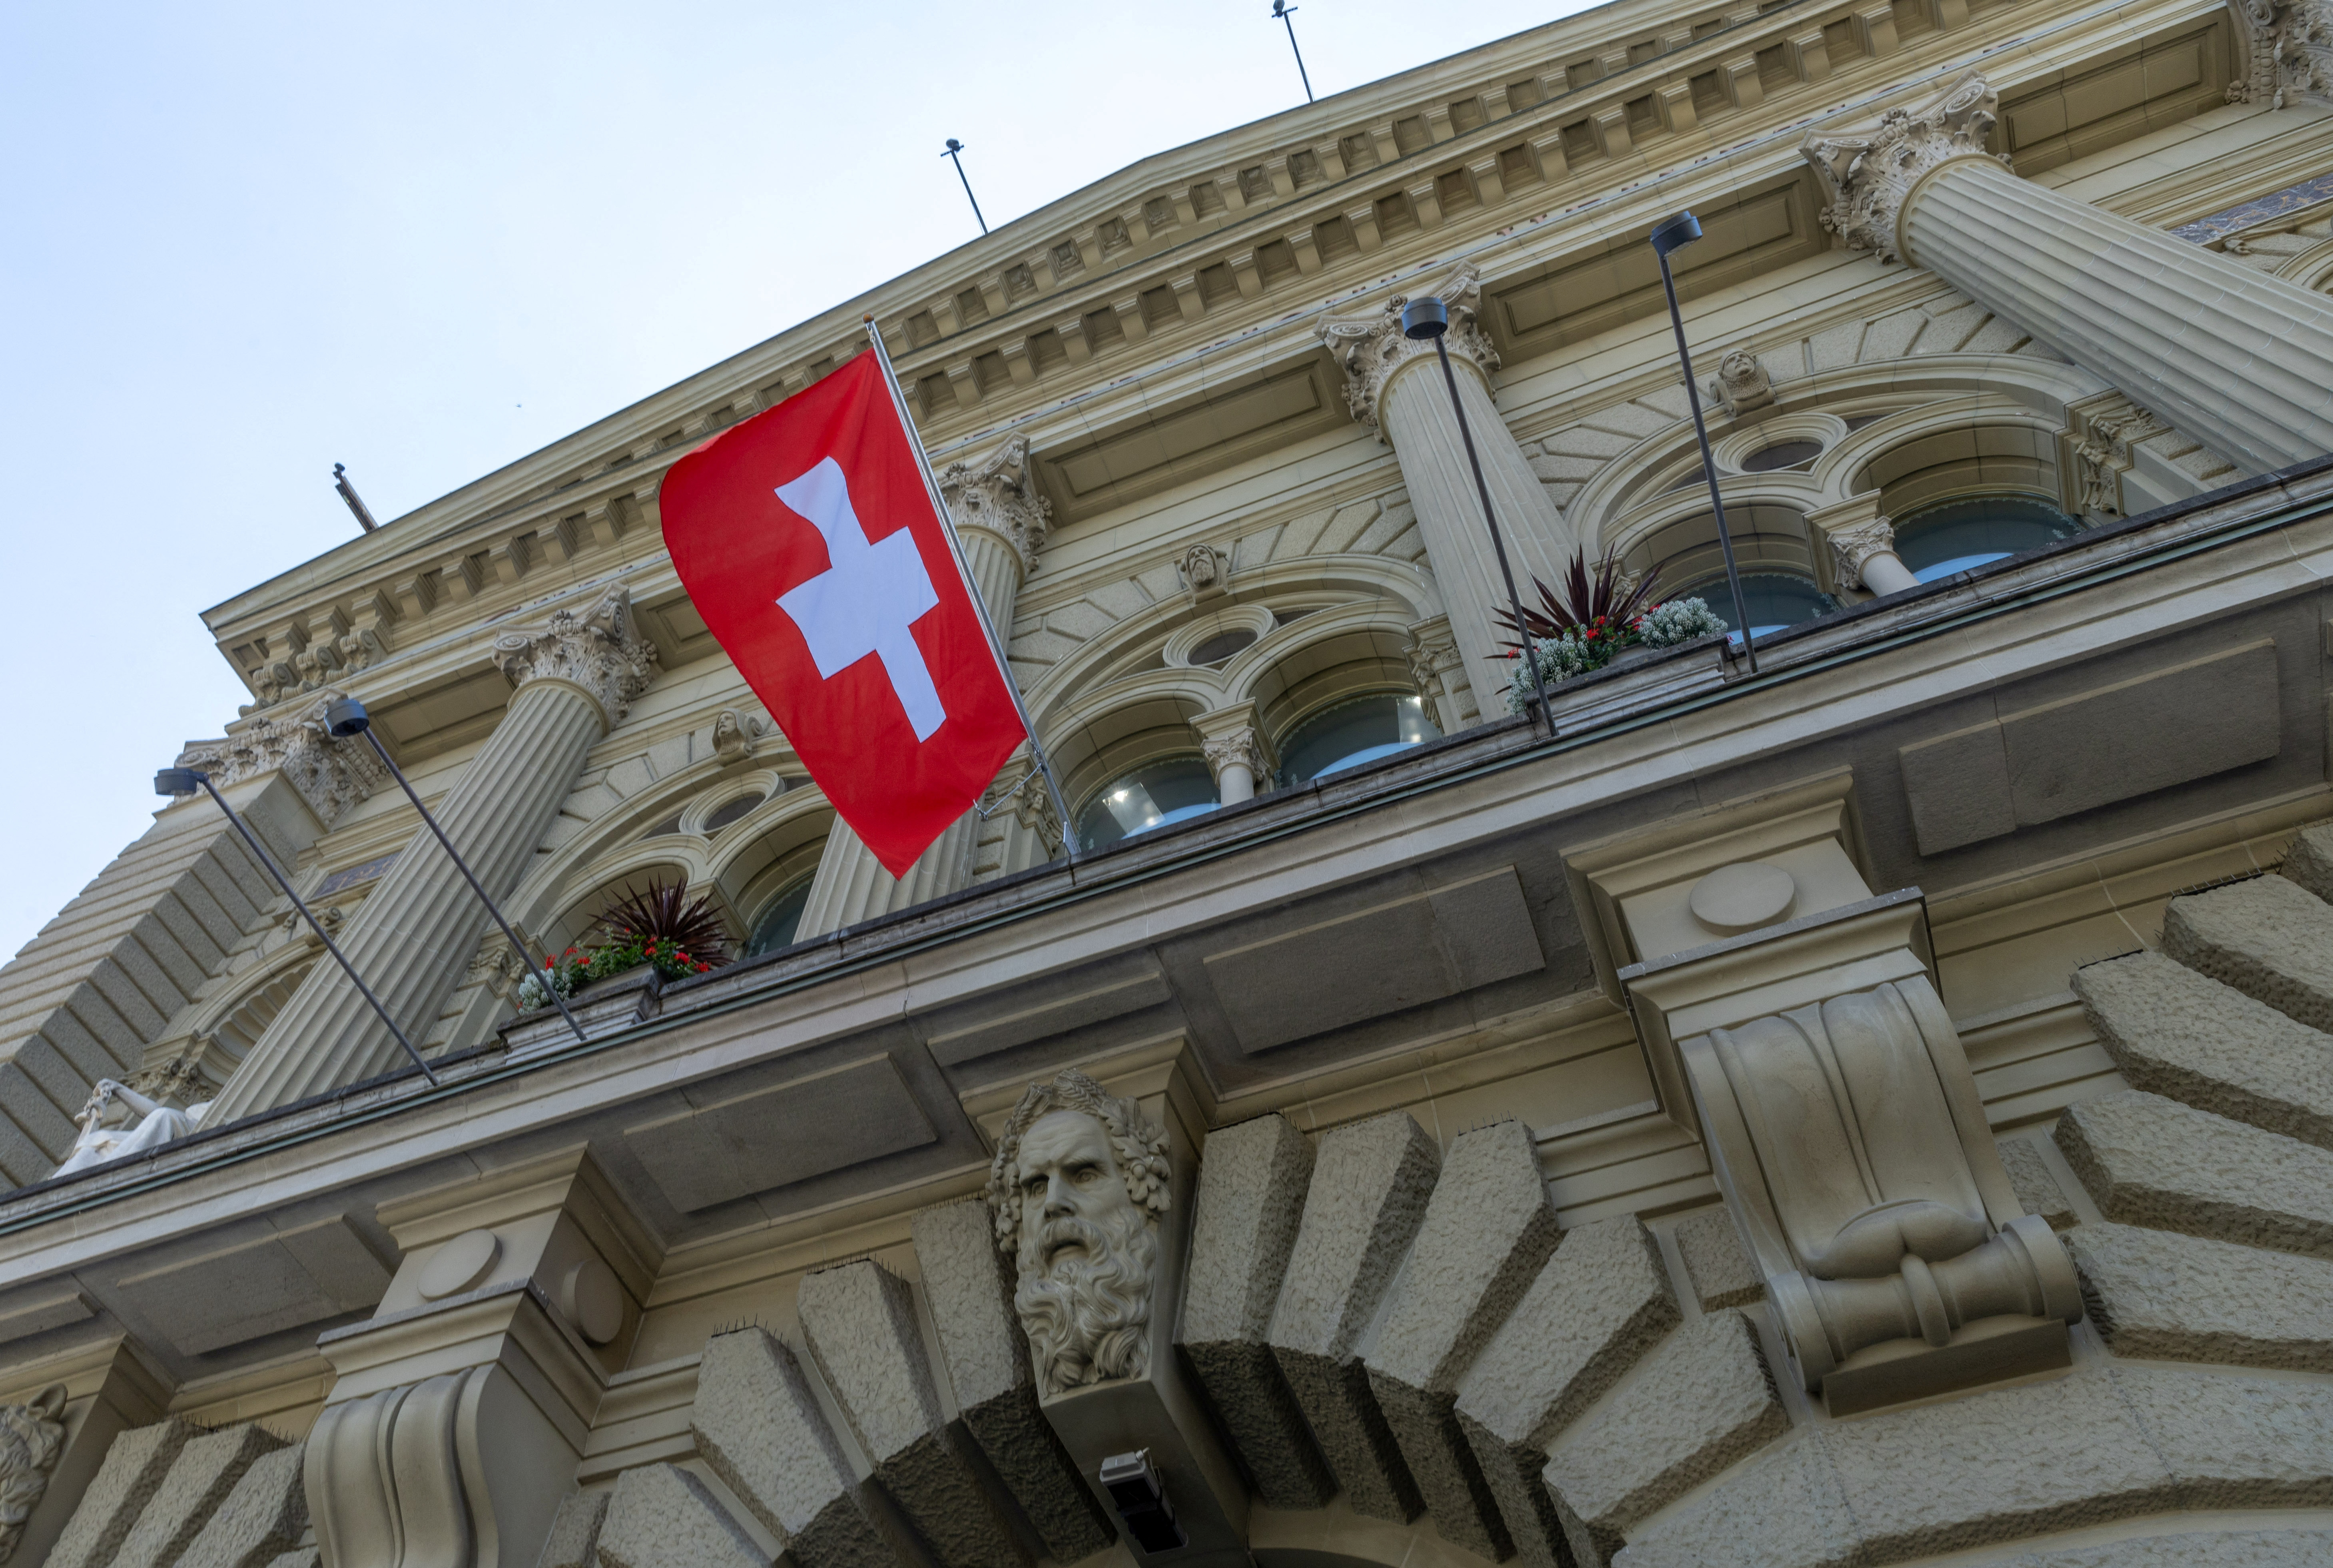 Après une phase compliquée, la Suisse enfin prête à se rapprocher davantage de l'UE